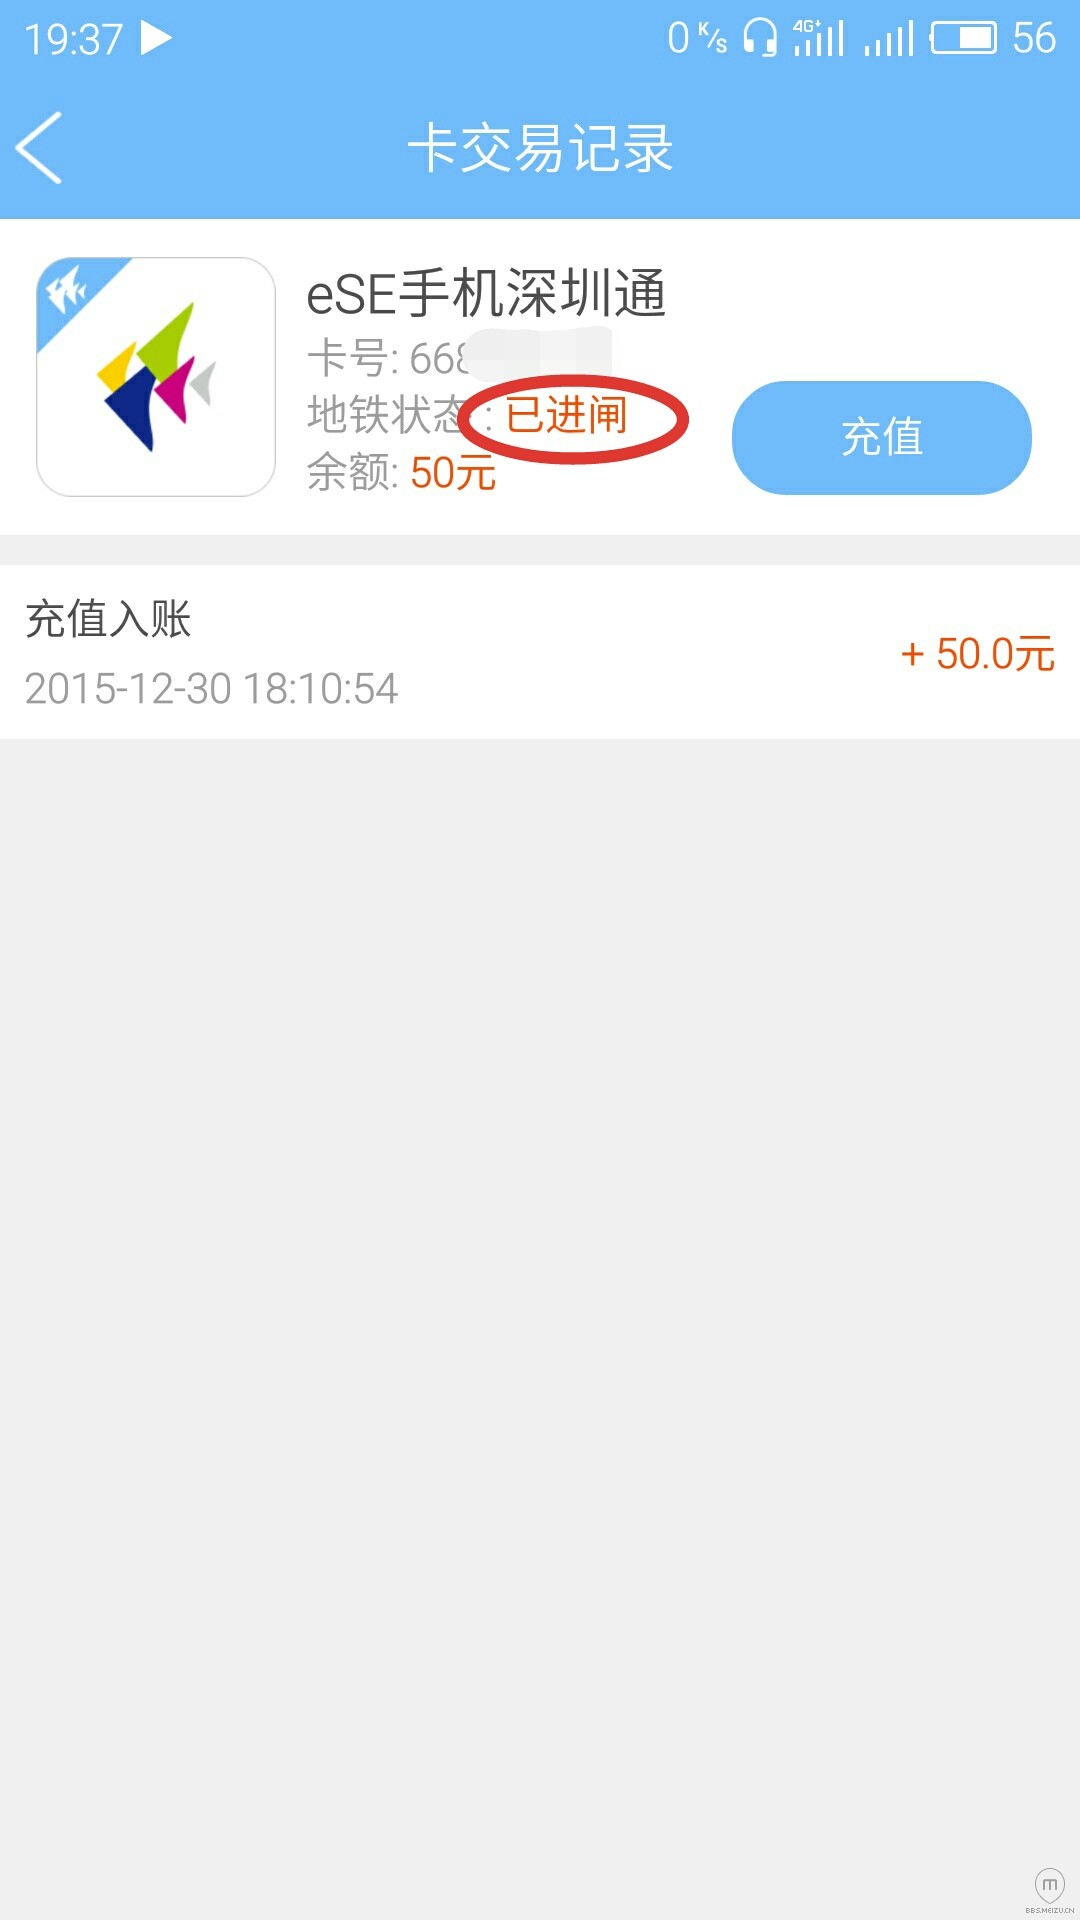 pro5已经支持基于NFC的eSE手机深圳通,无需